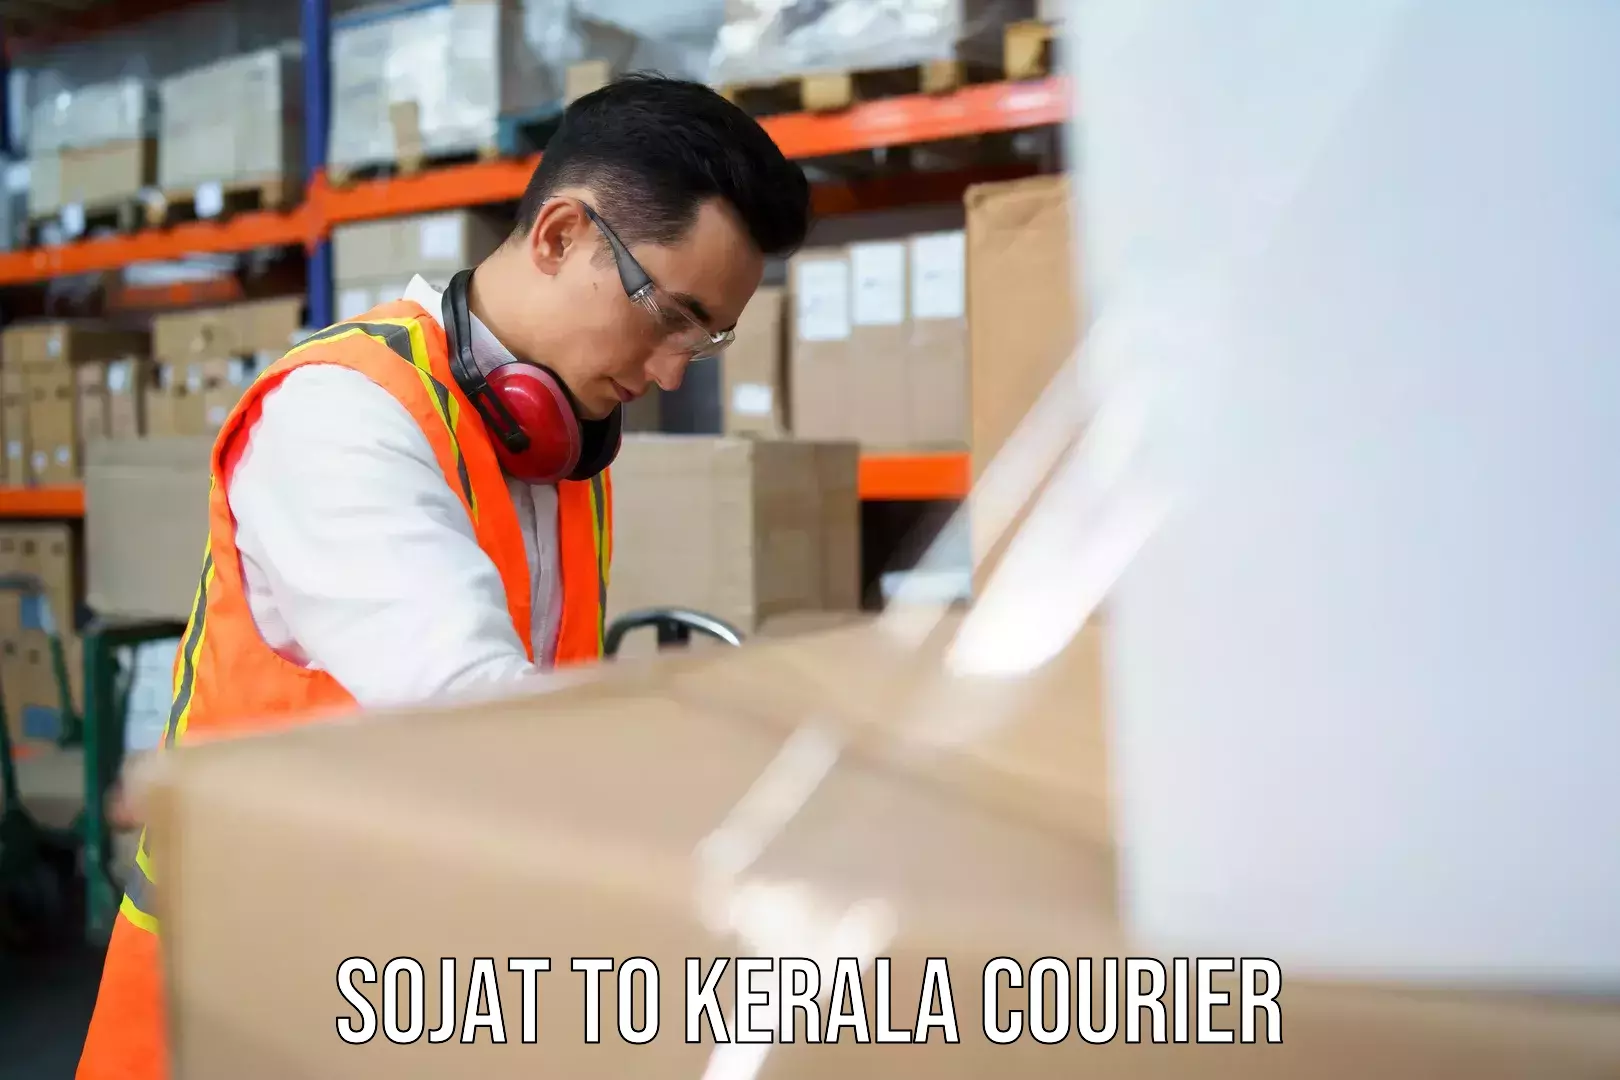 Urgent courier needs Sojat to Attingal